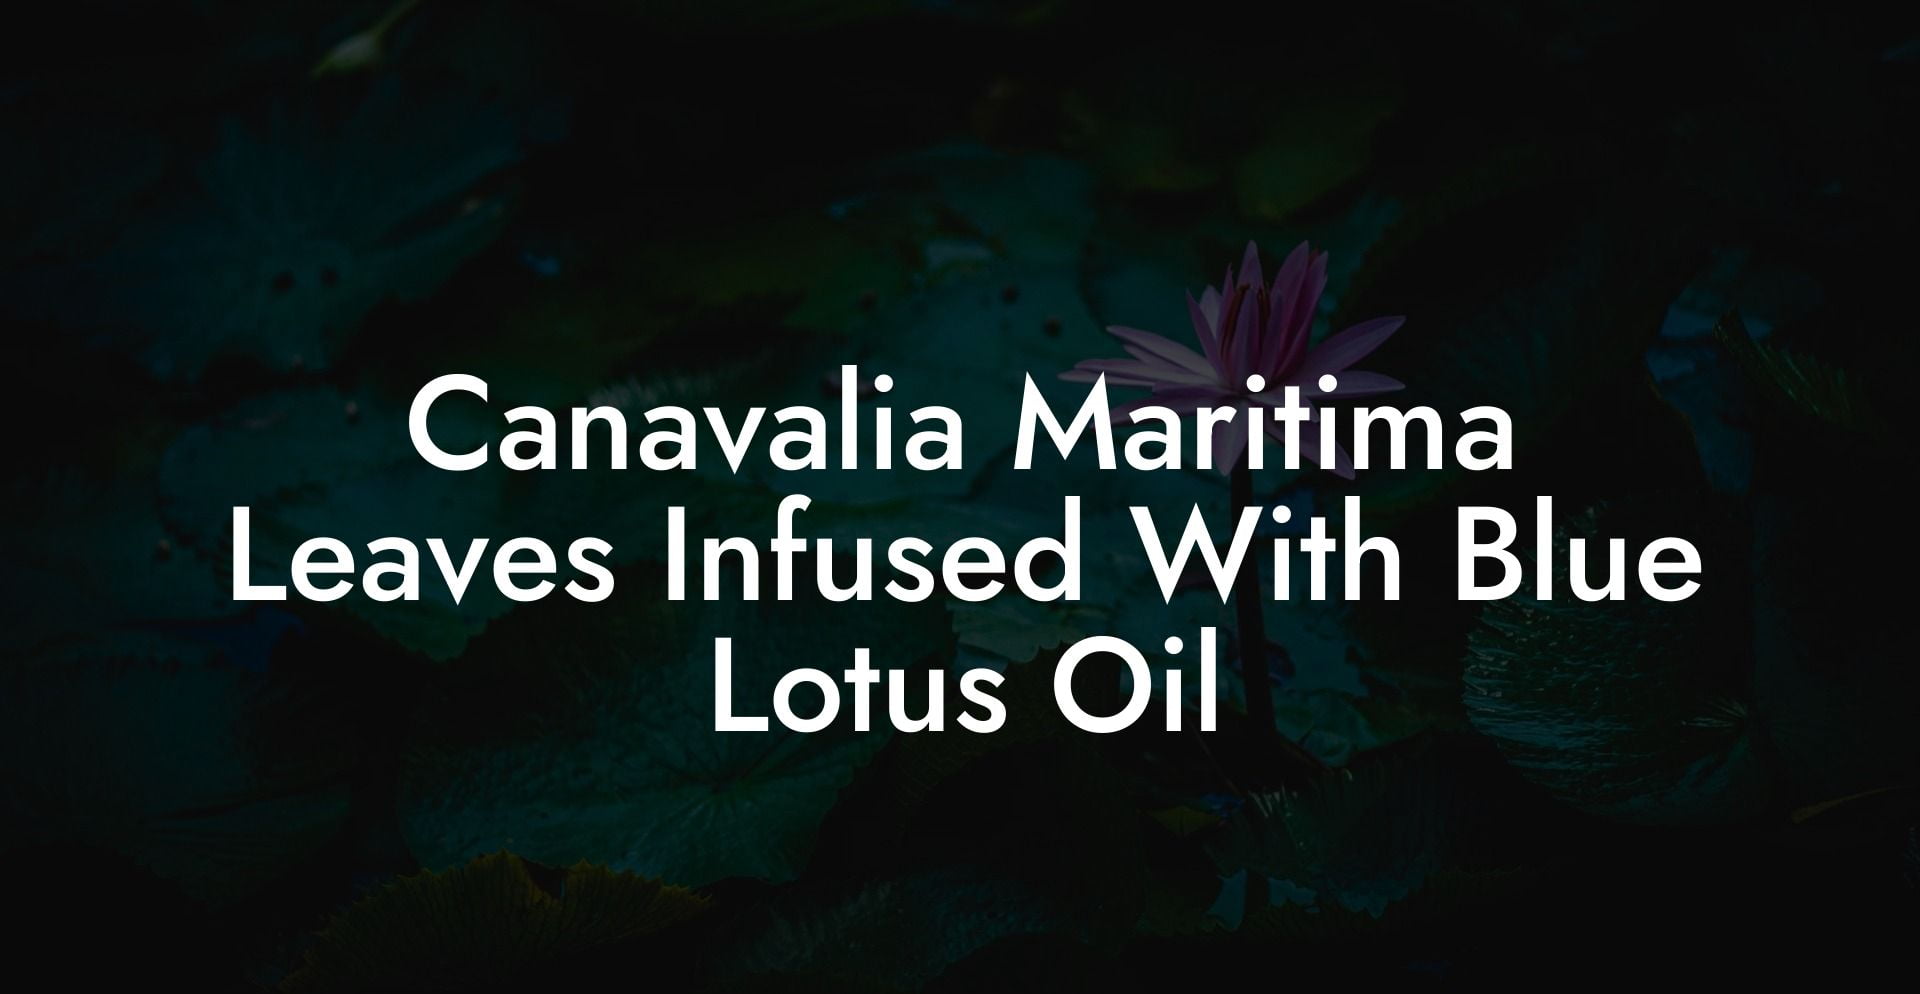 Canavalia Maritima Leaves Infused With Blue Lotus Oil